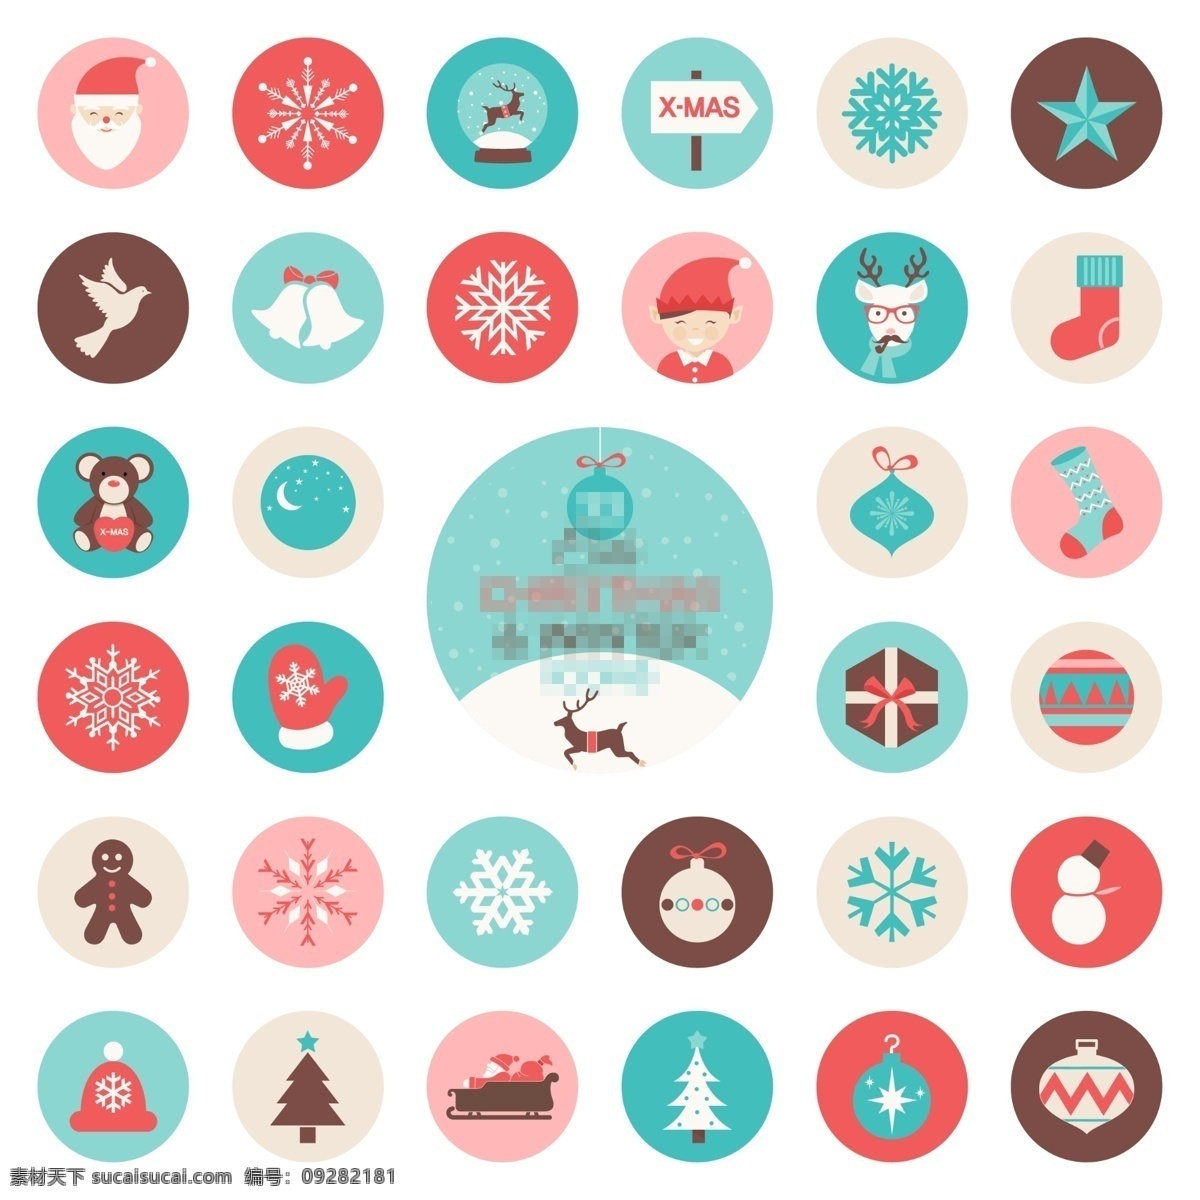 彩色 圣诞节 扁平 图标 图标设计 icon icon设计 icon图标 网页图标 圣诞节图标 圣诞老人图标 手套图标 圣诞树图标 小鹿图标